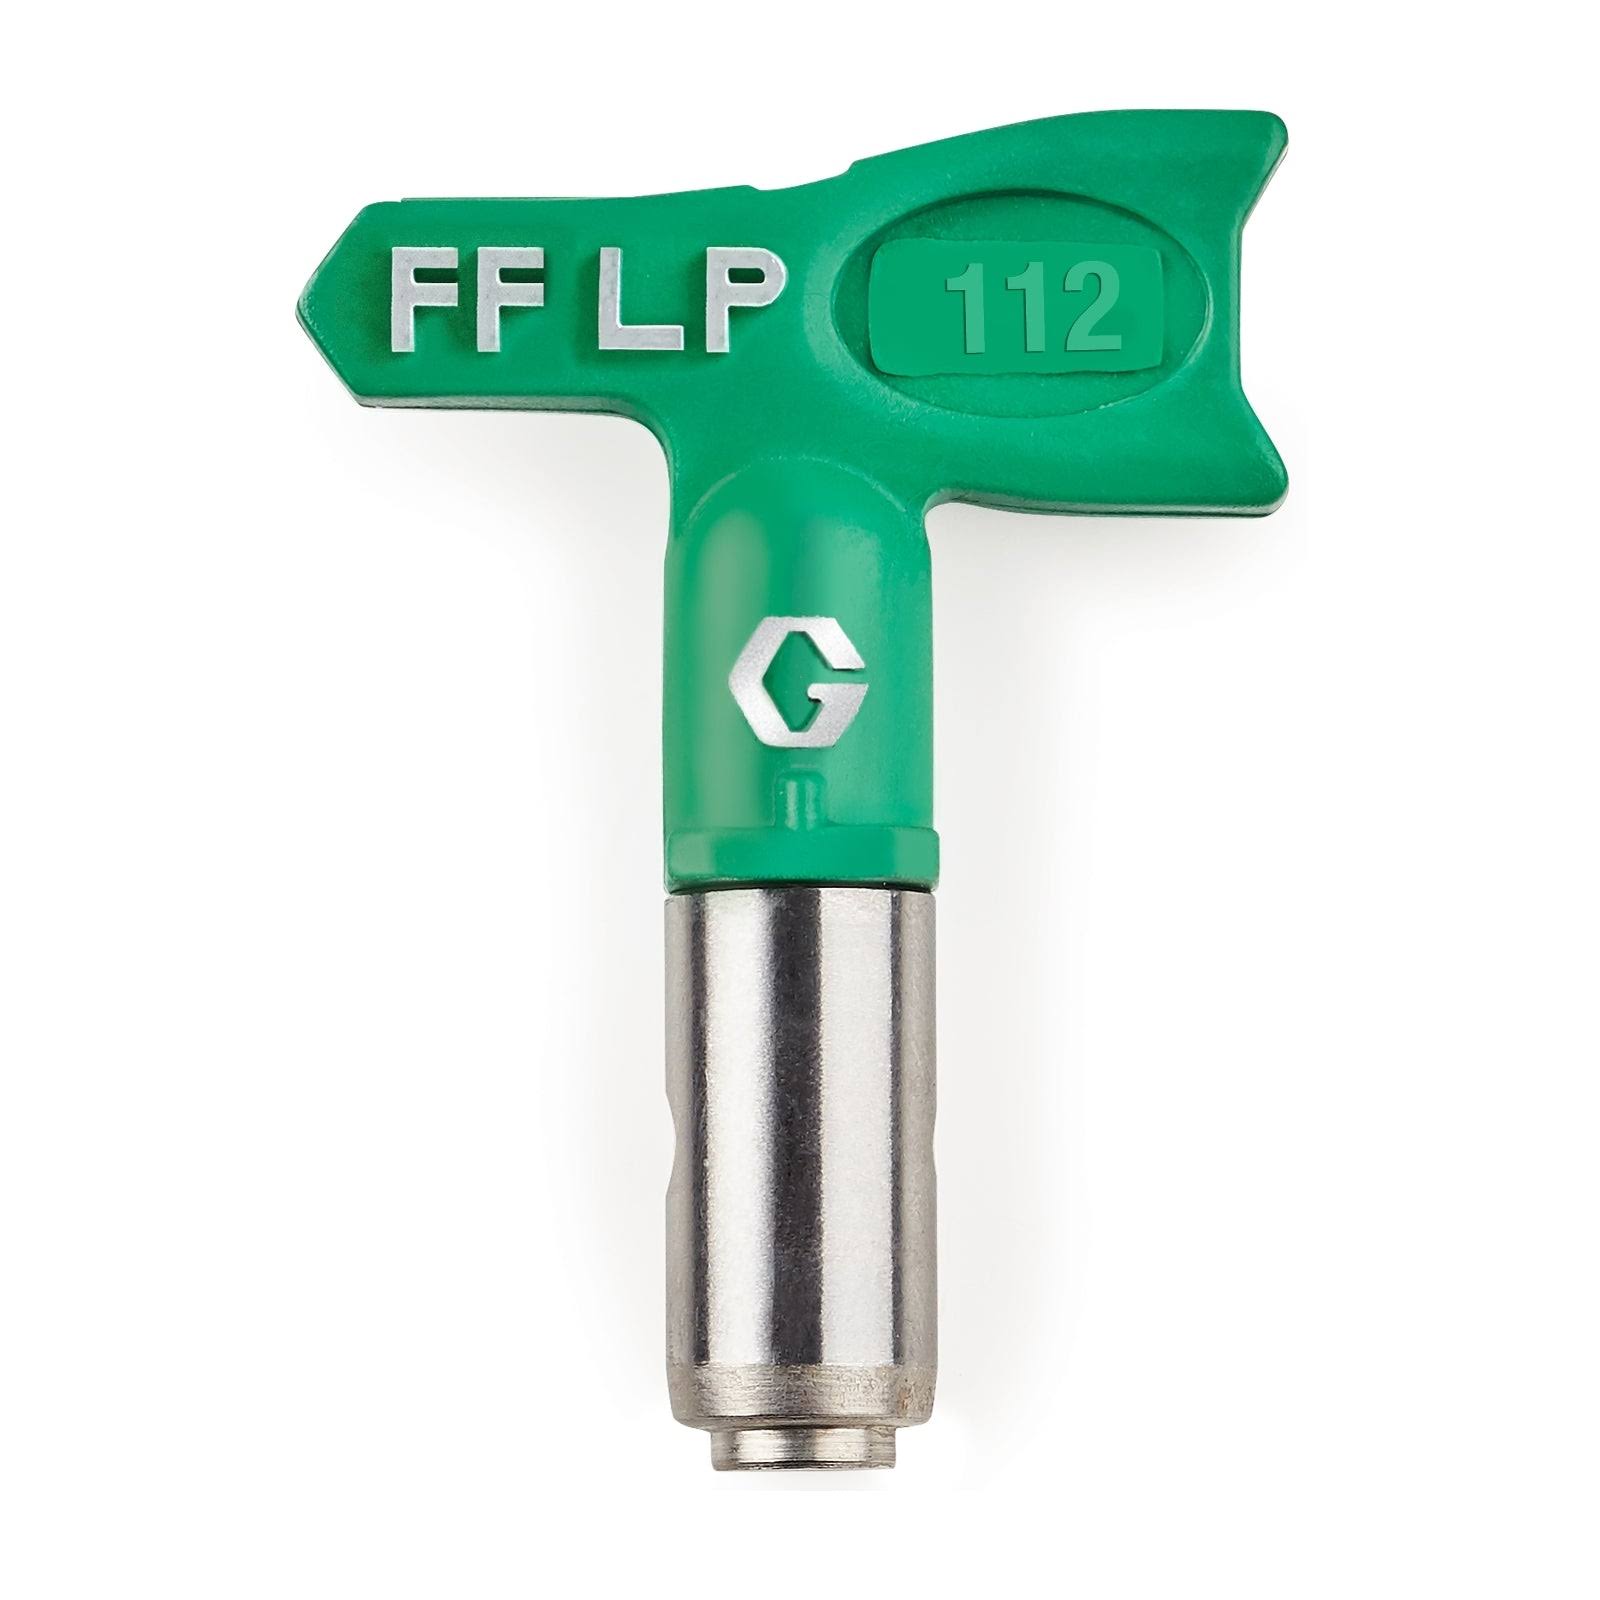 Graco Fflp112 Airless Spray Gun Tip - 0 0.012"